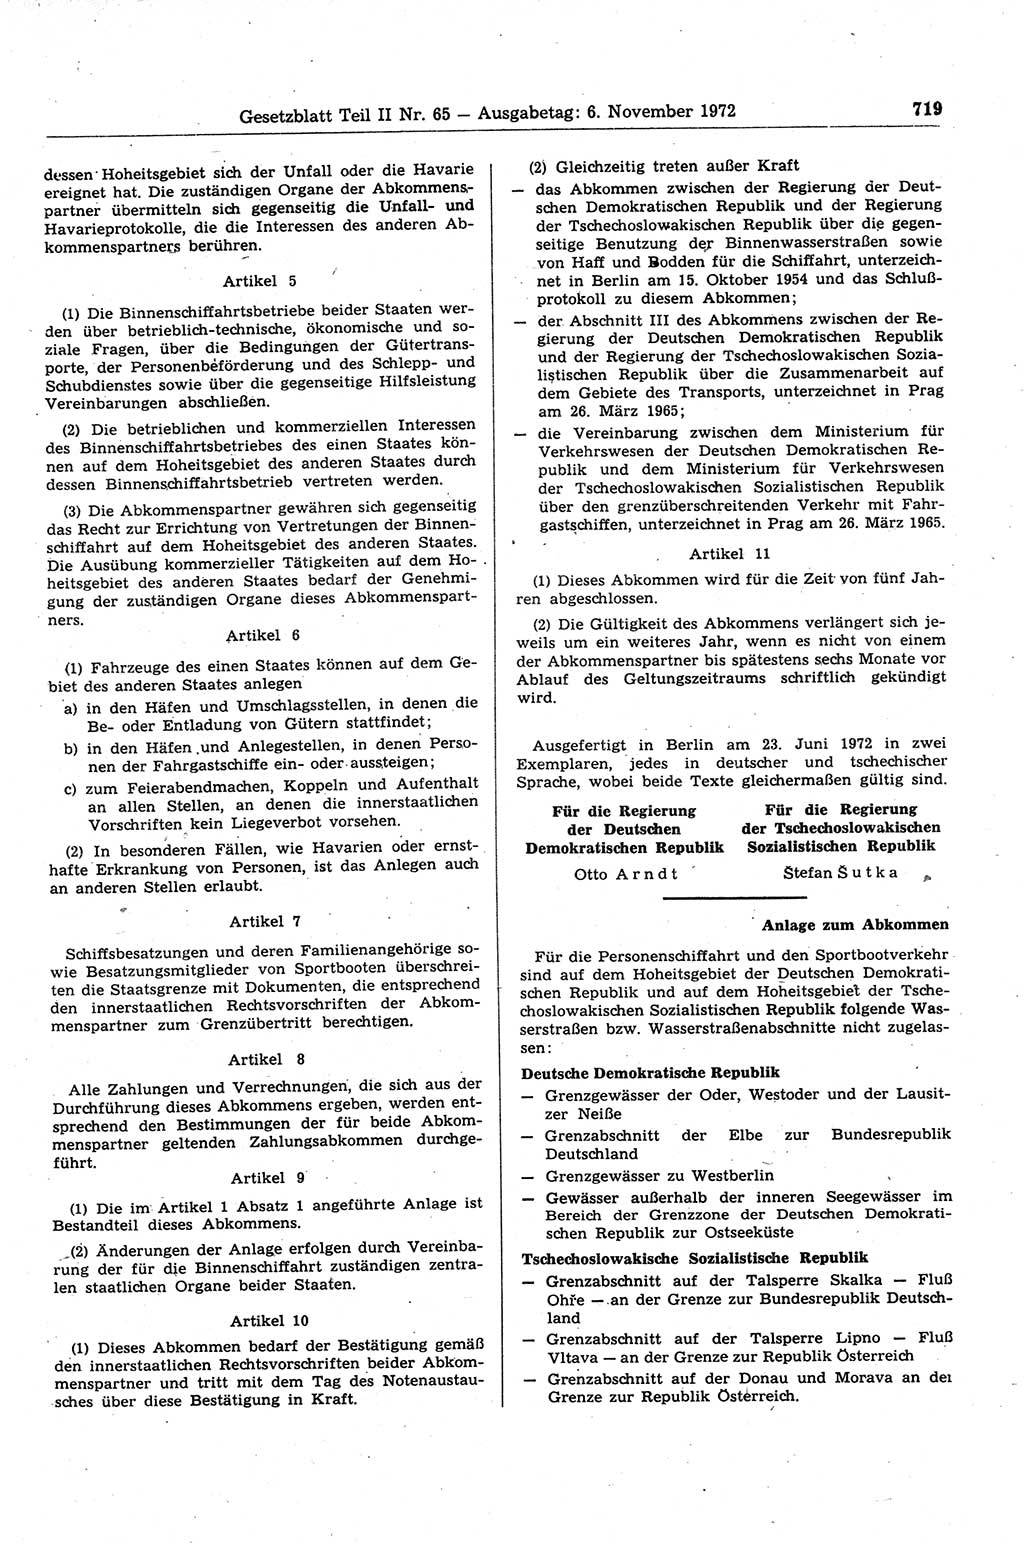 Gesetzblatt (GBl.) der Deutschen Demokratischen Republik (DDR) Teil ⅠⅠ 1972, Seite 719 (GBl. DDR ⅠⅠ 1972, S. 719)